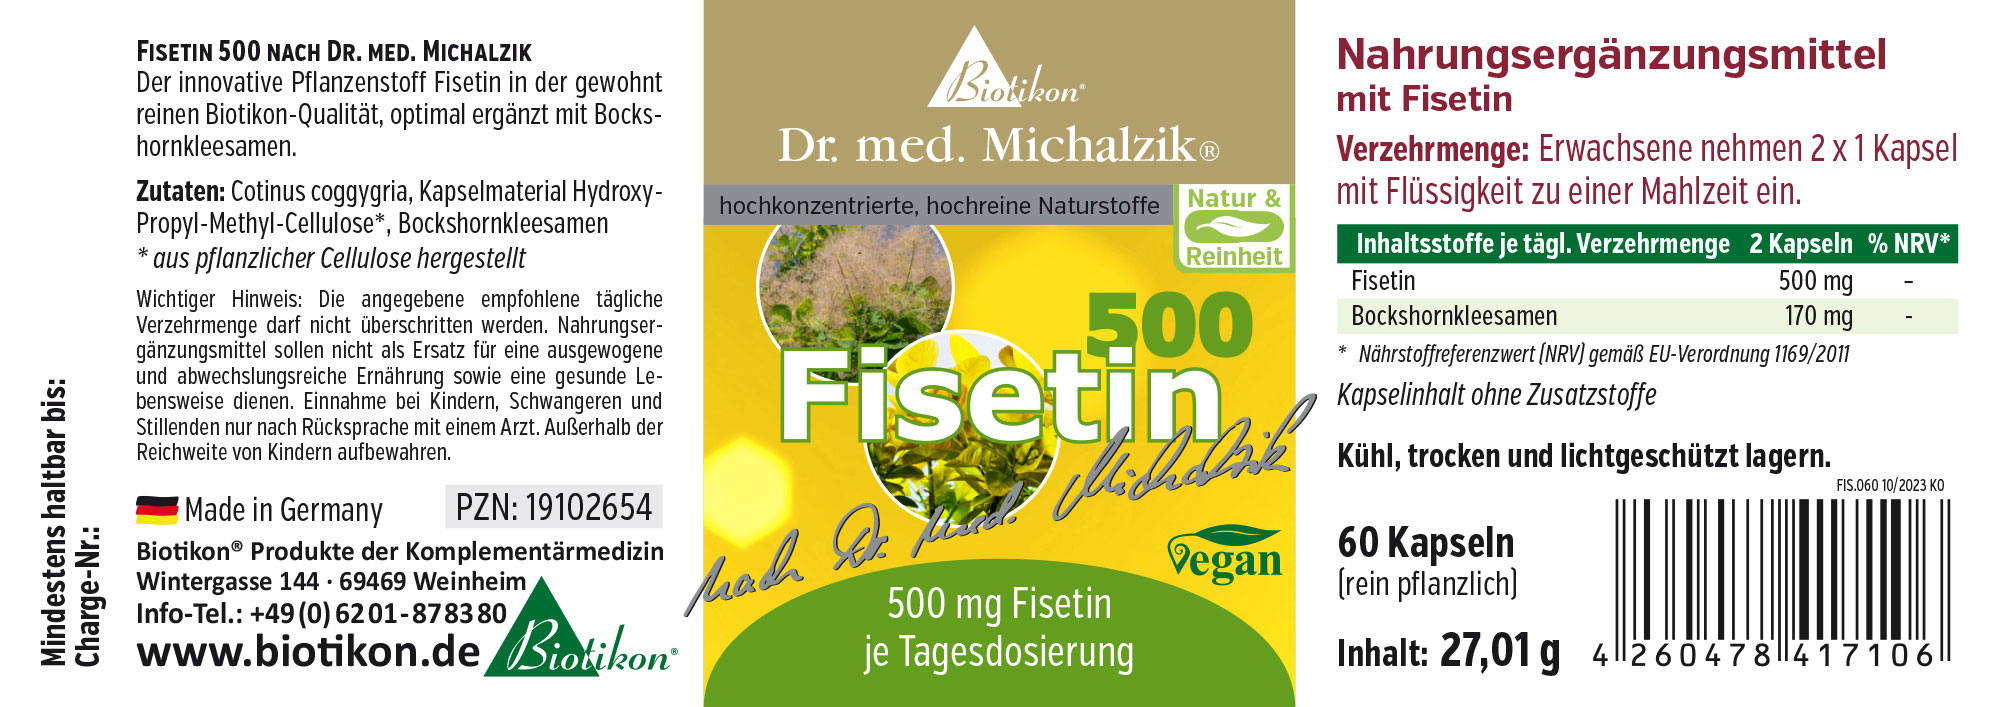 Fisetin nach Dr. med. Michalzik